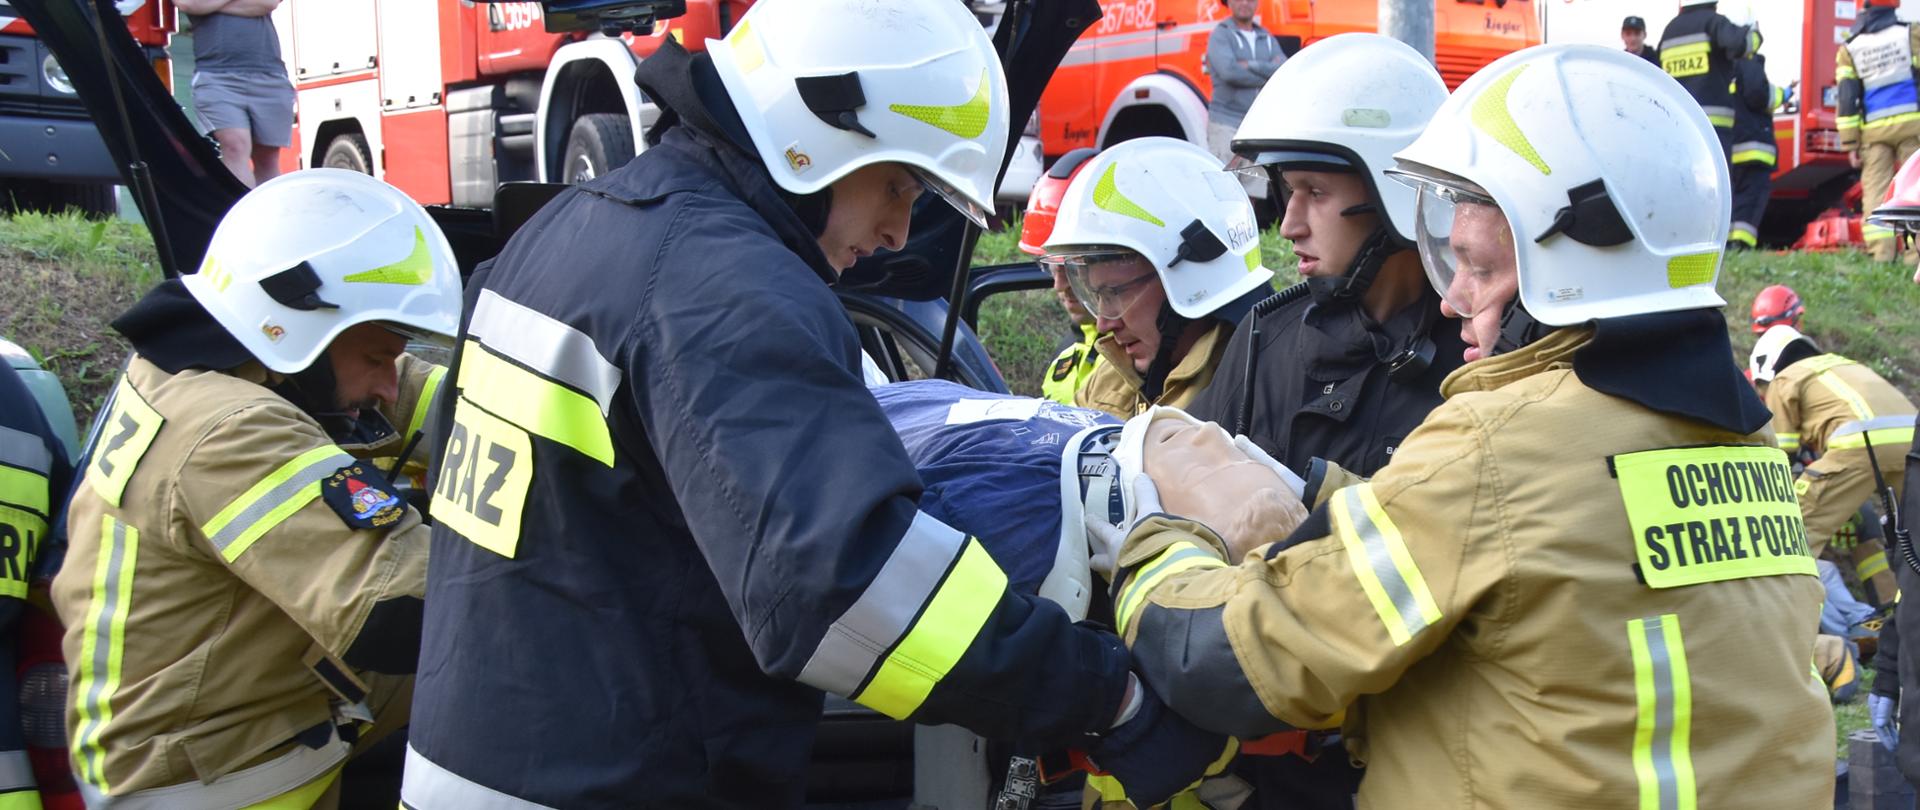 Na zdjęciu strażacy w ubraniach specjalnych, którzy ewakuują poszkodowanego (manekina) z wraku samochodu osobowego.